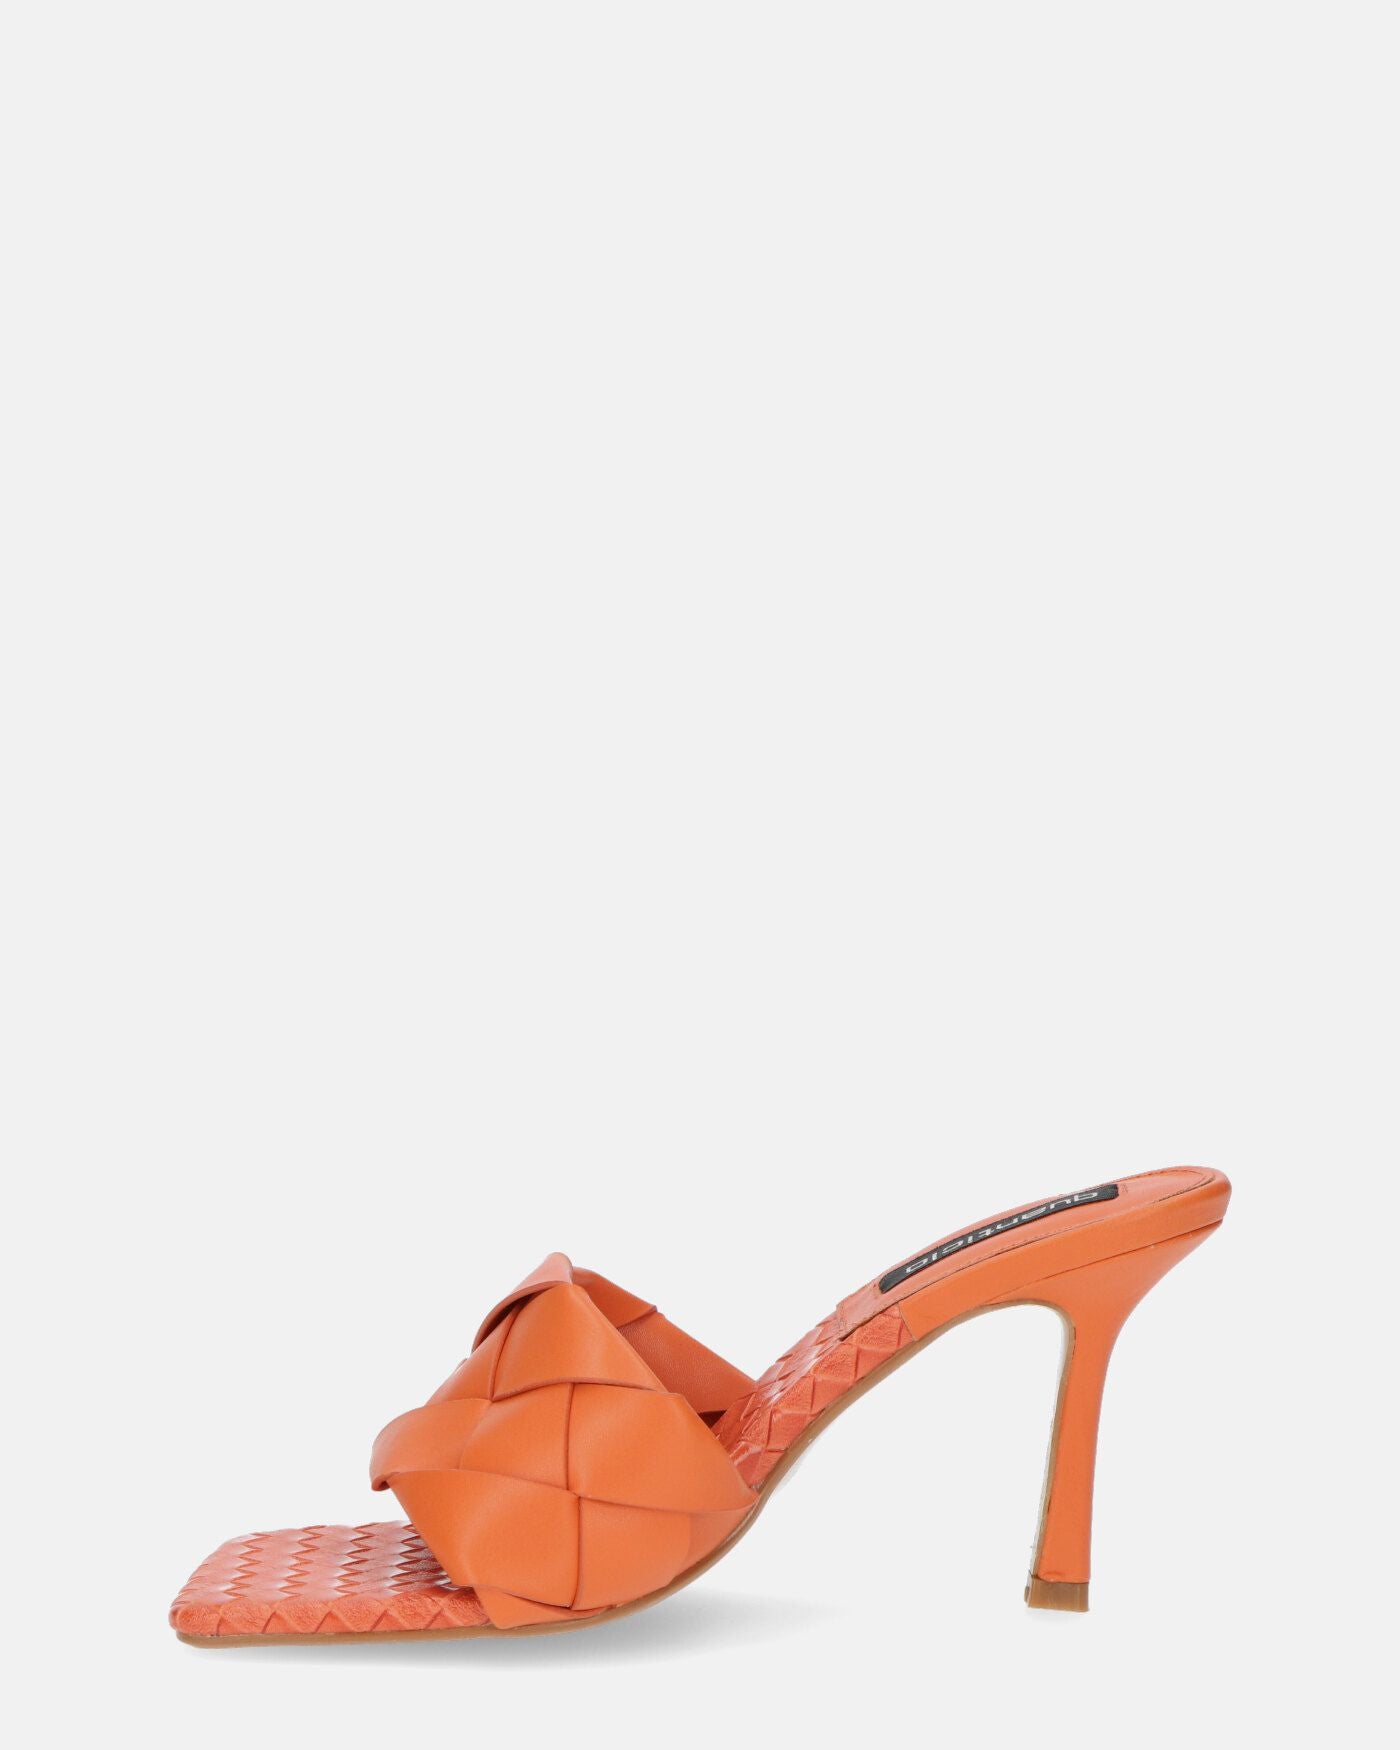 ENRICA - sandalia en piel trenzada naranja con tacón